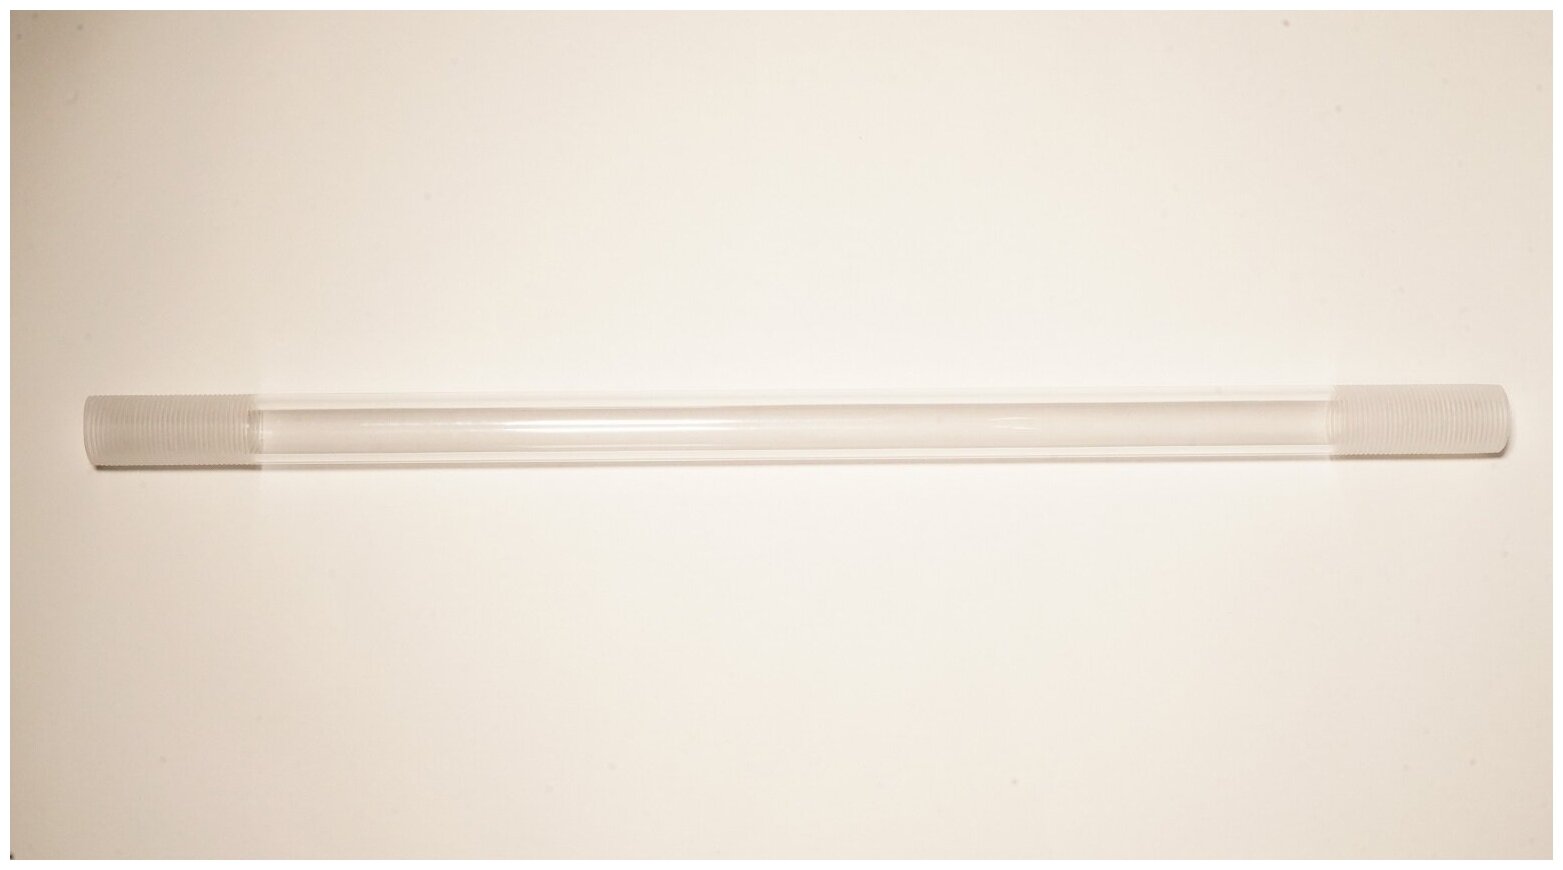 Прочная прозрачная трубка из оргстекла с резьбой G 3/4 (длина 1 м, наружный диаметр 25 мм, толщина стенки 3 мм)